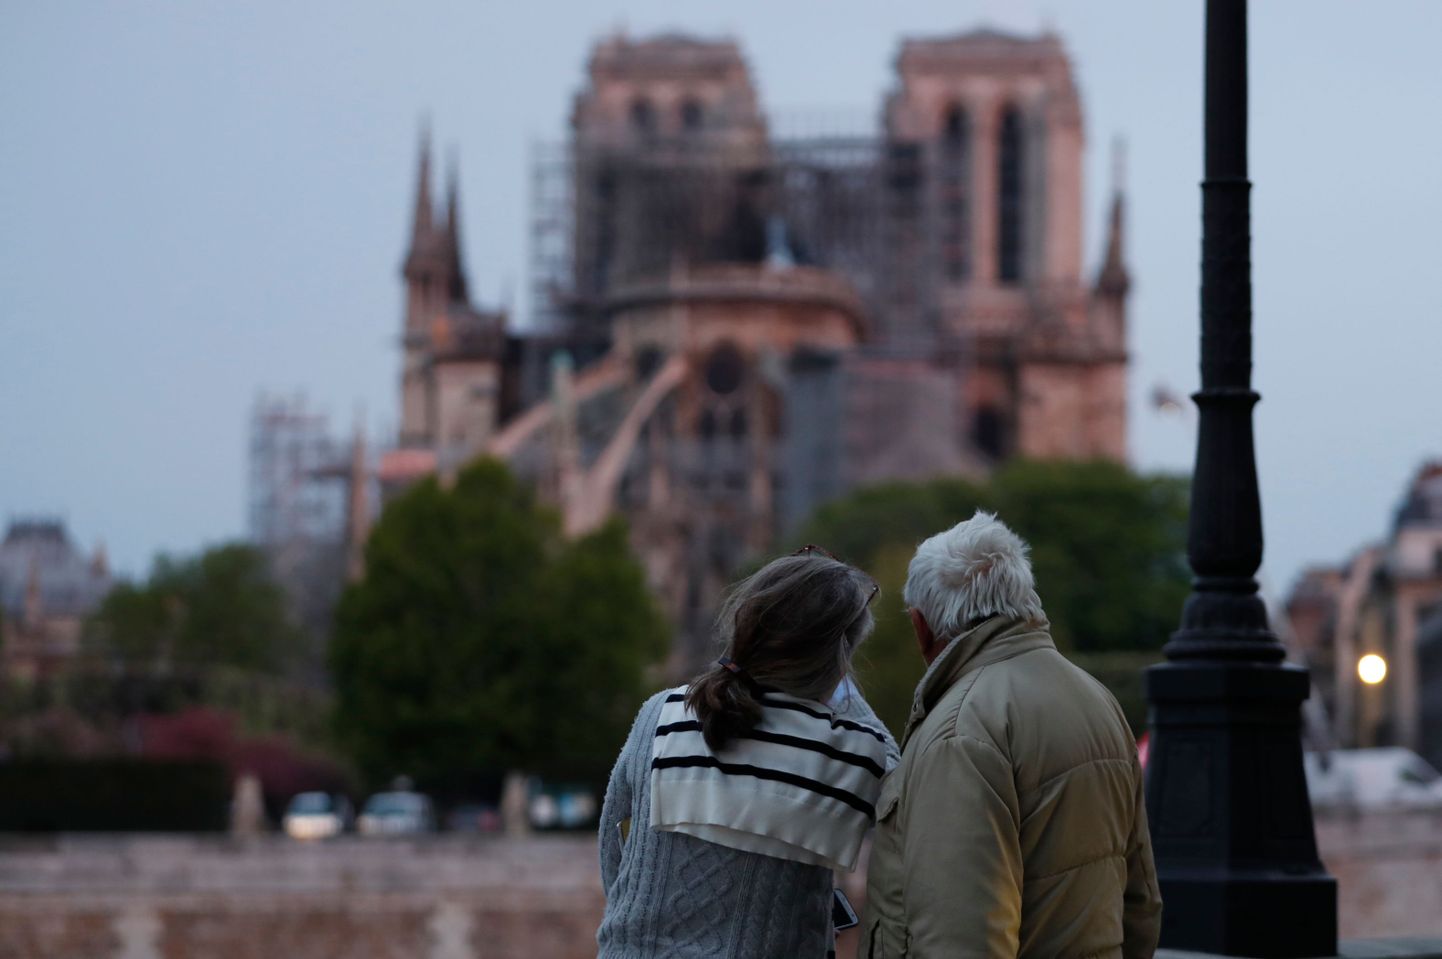 Parīzes Dievmātes katedrāle: rīts pēc ugunsgrēka